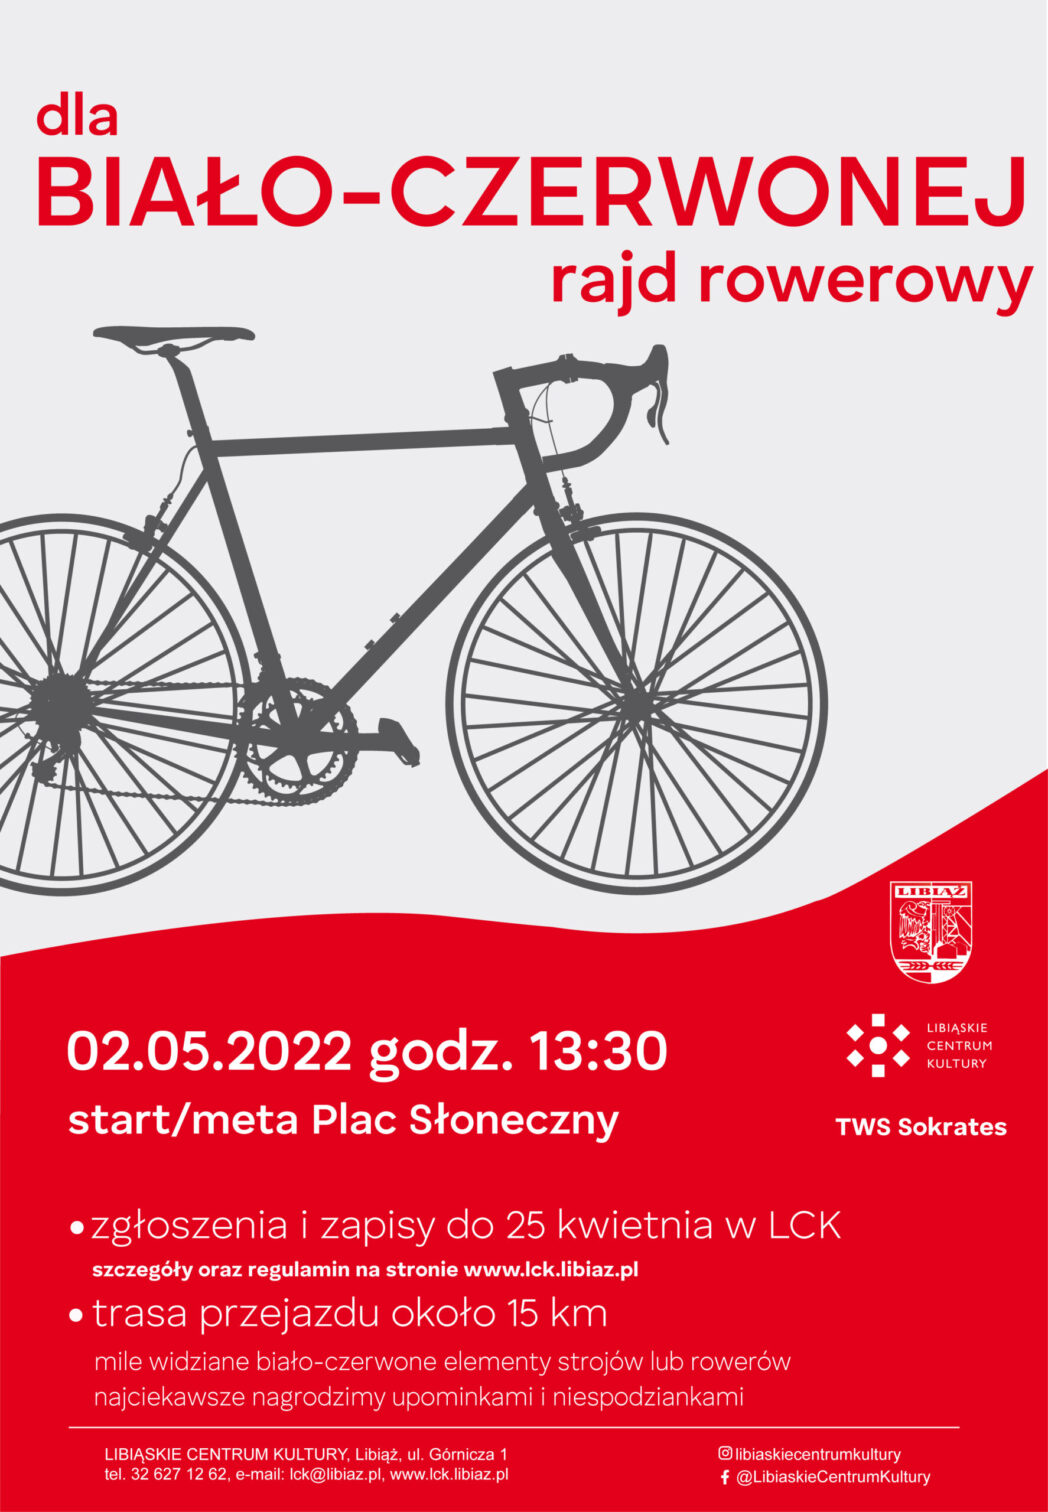 plakat rajdu rowerowego dla Biało-Czerwonej